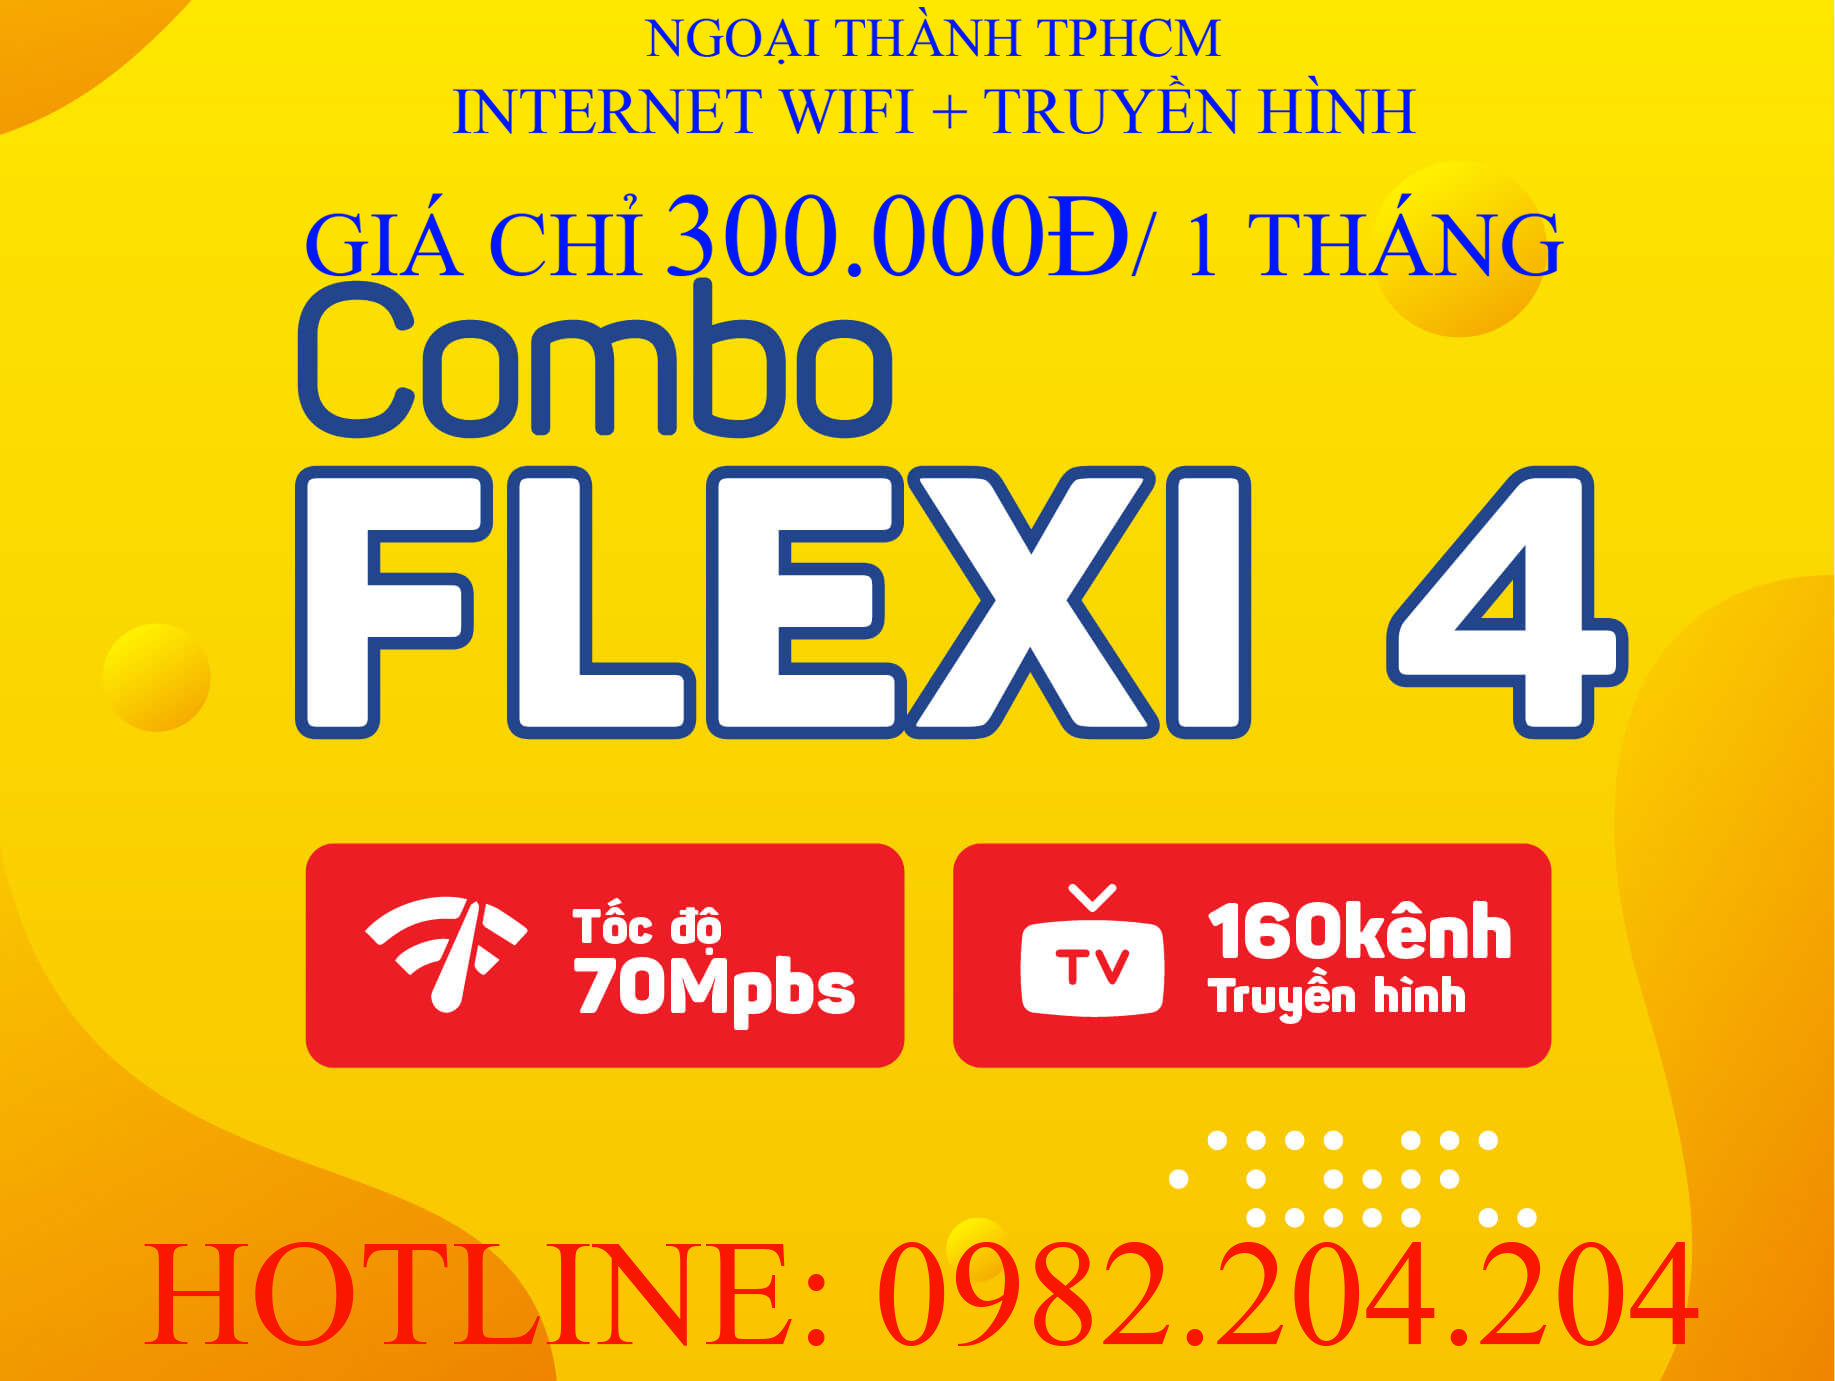 Lắp Wifi Giá Rẻ TPHCM kèm truyền hình Gói combo flexi 4